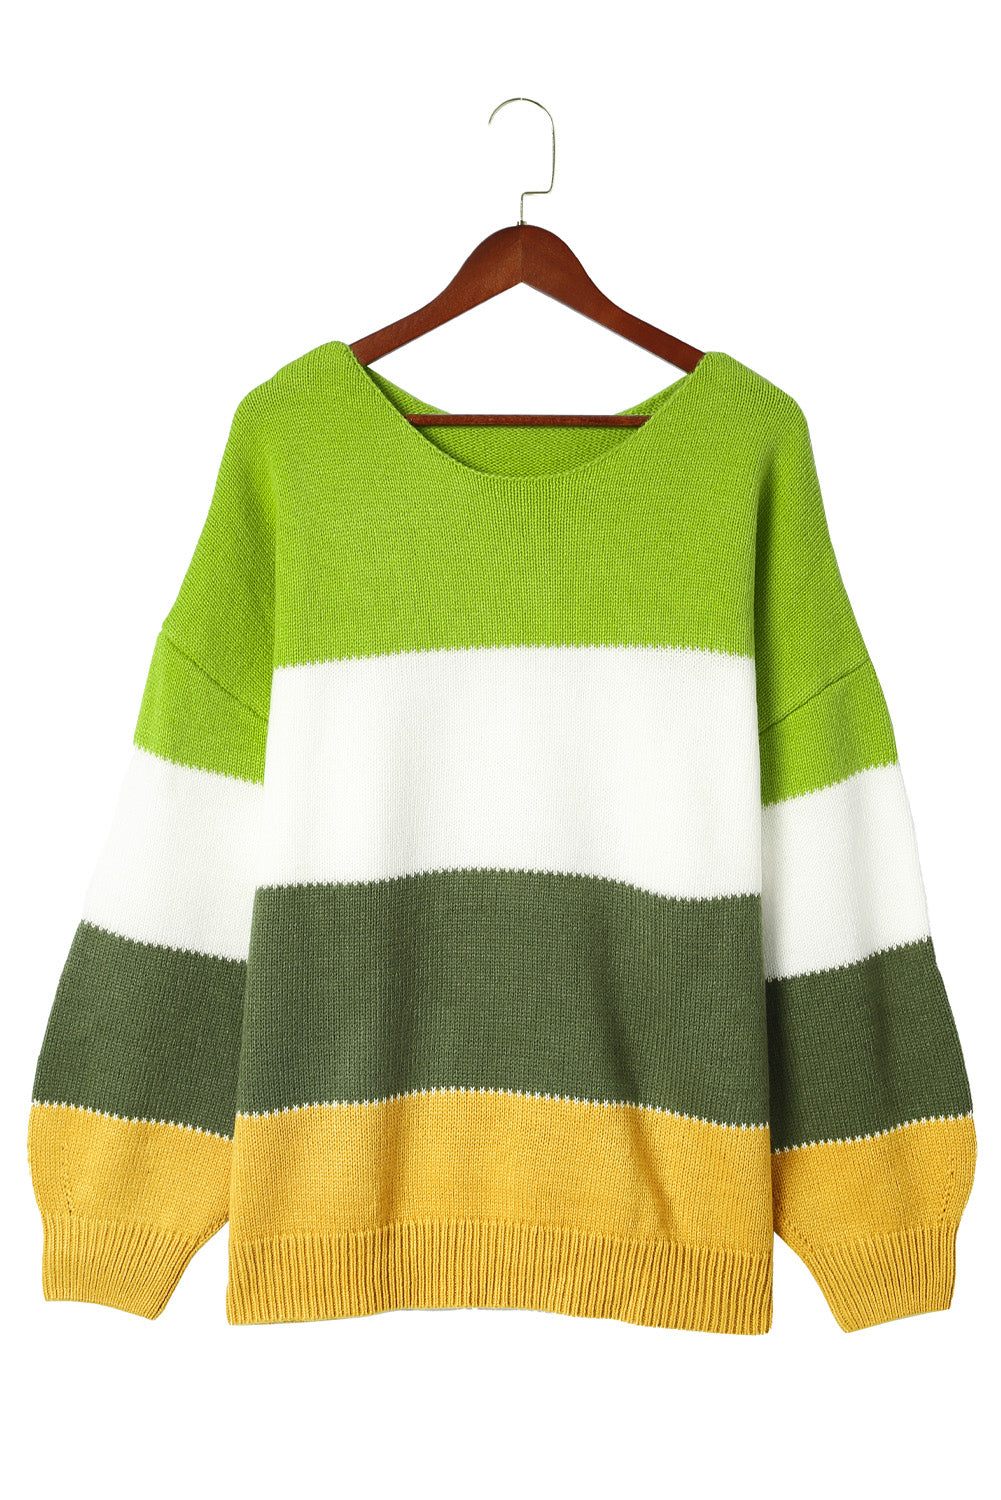 Zeleni patchwork džemper veće veličine u boji